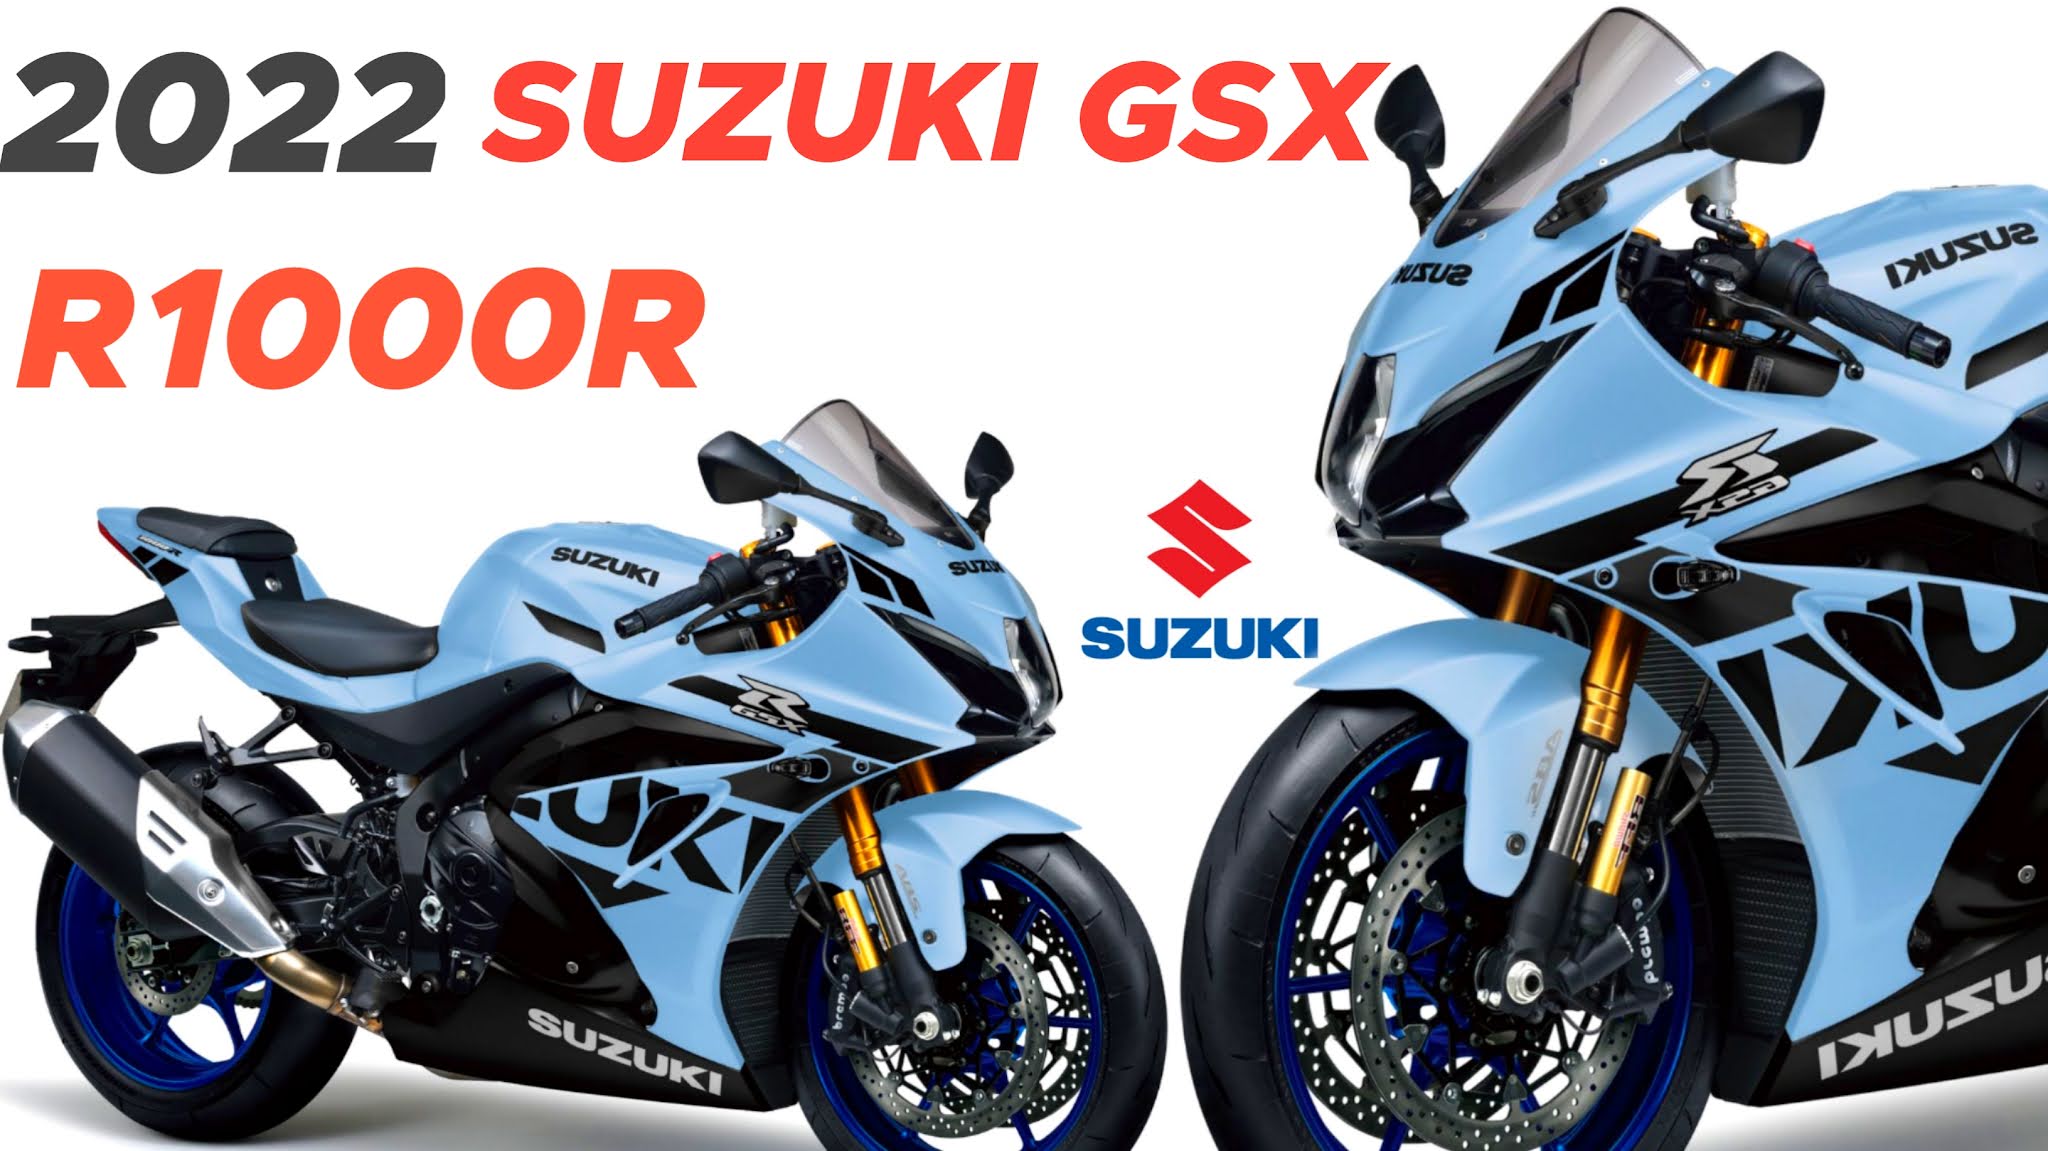 2022 Suzuki GSX-R1000R,Suzuki GSX-R1000R in usa,2022suzuki gsx r1000 price in usa,how much is a suzuki gsx r1000,price of suzuki gsx r1000,2021 suzuki gsx-r1000r top speed,2021 suzuki gsx-r1000r color,2021 suzuki gsx-r1000r specs,2021 suzuki gsx-r1000r new model,2021 suzuki gsx r1000r review,2021 suzuki gsx r1000 price,2021 suzuki gsx r1000 exhaust,suzuki gsx r1000r,suzuki gsx r1000r specs.